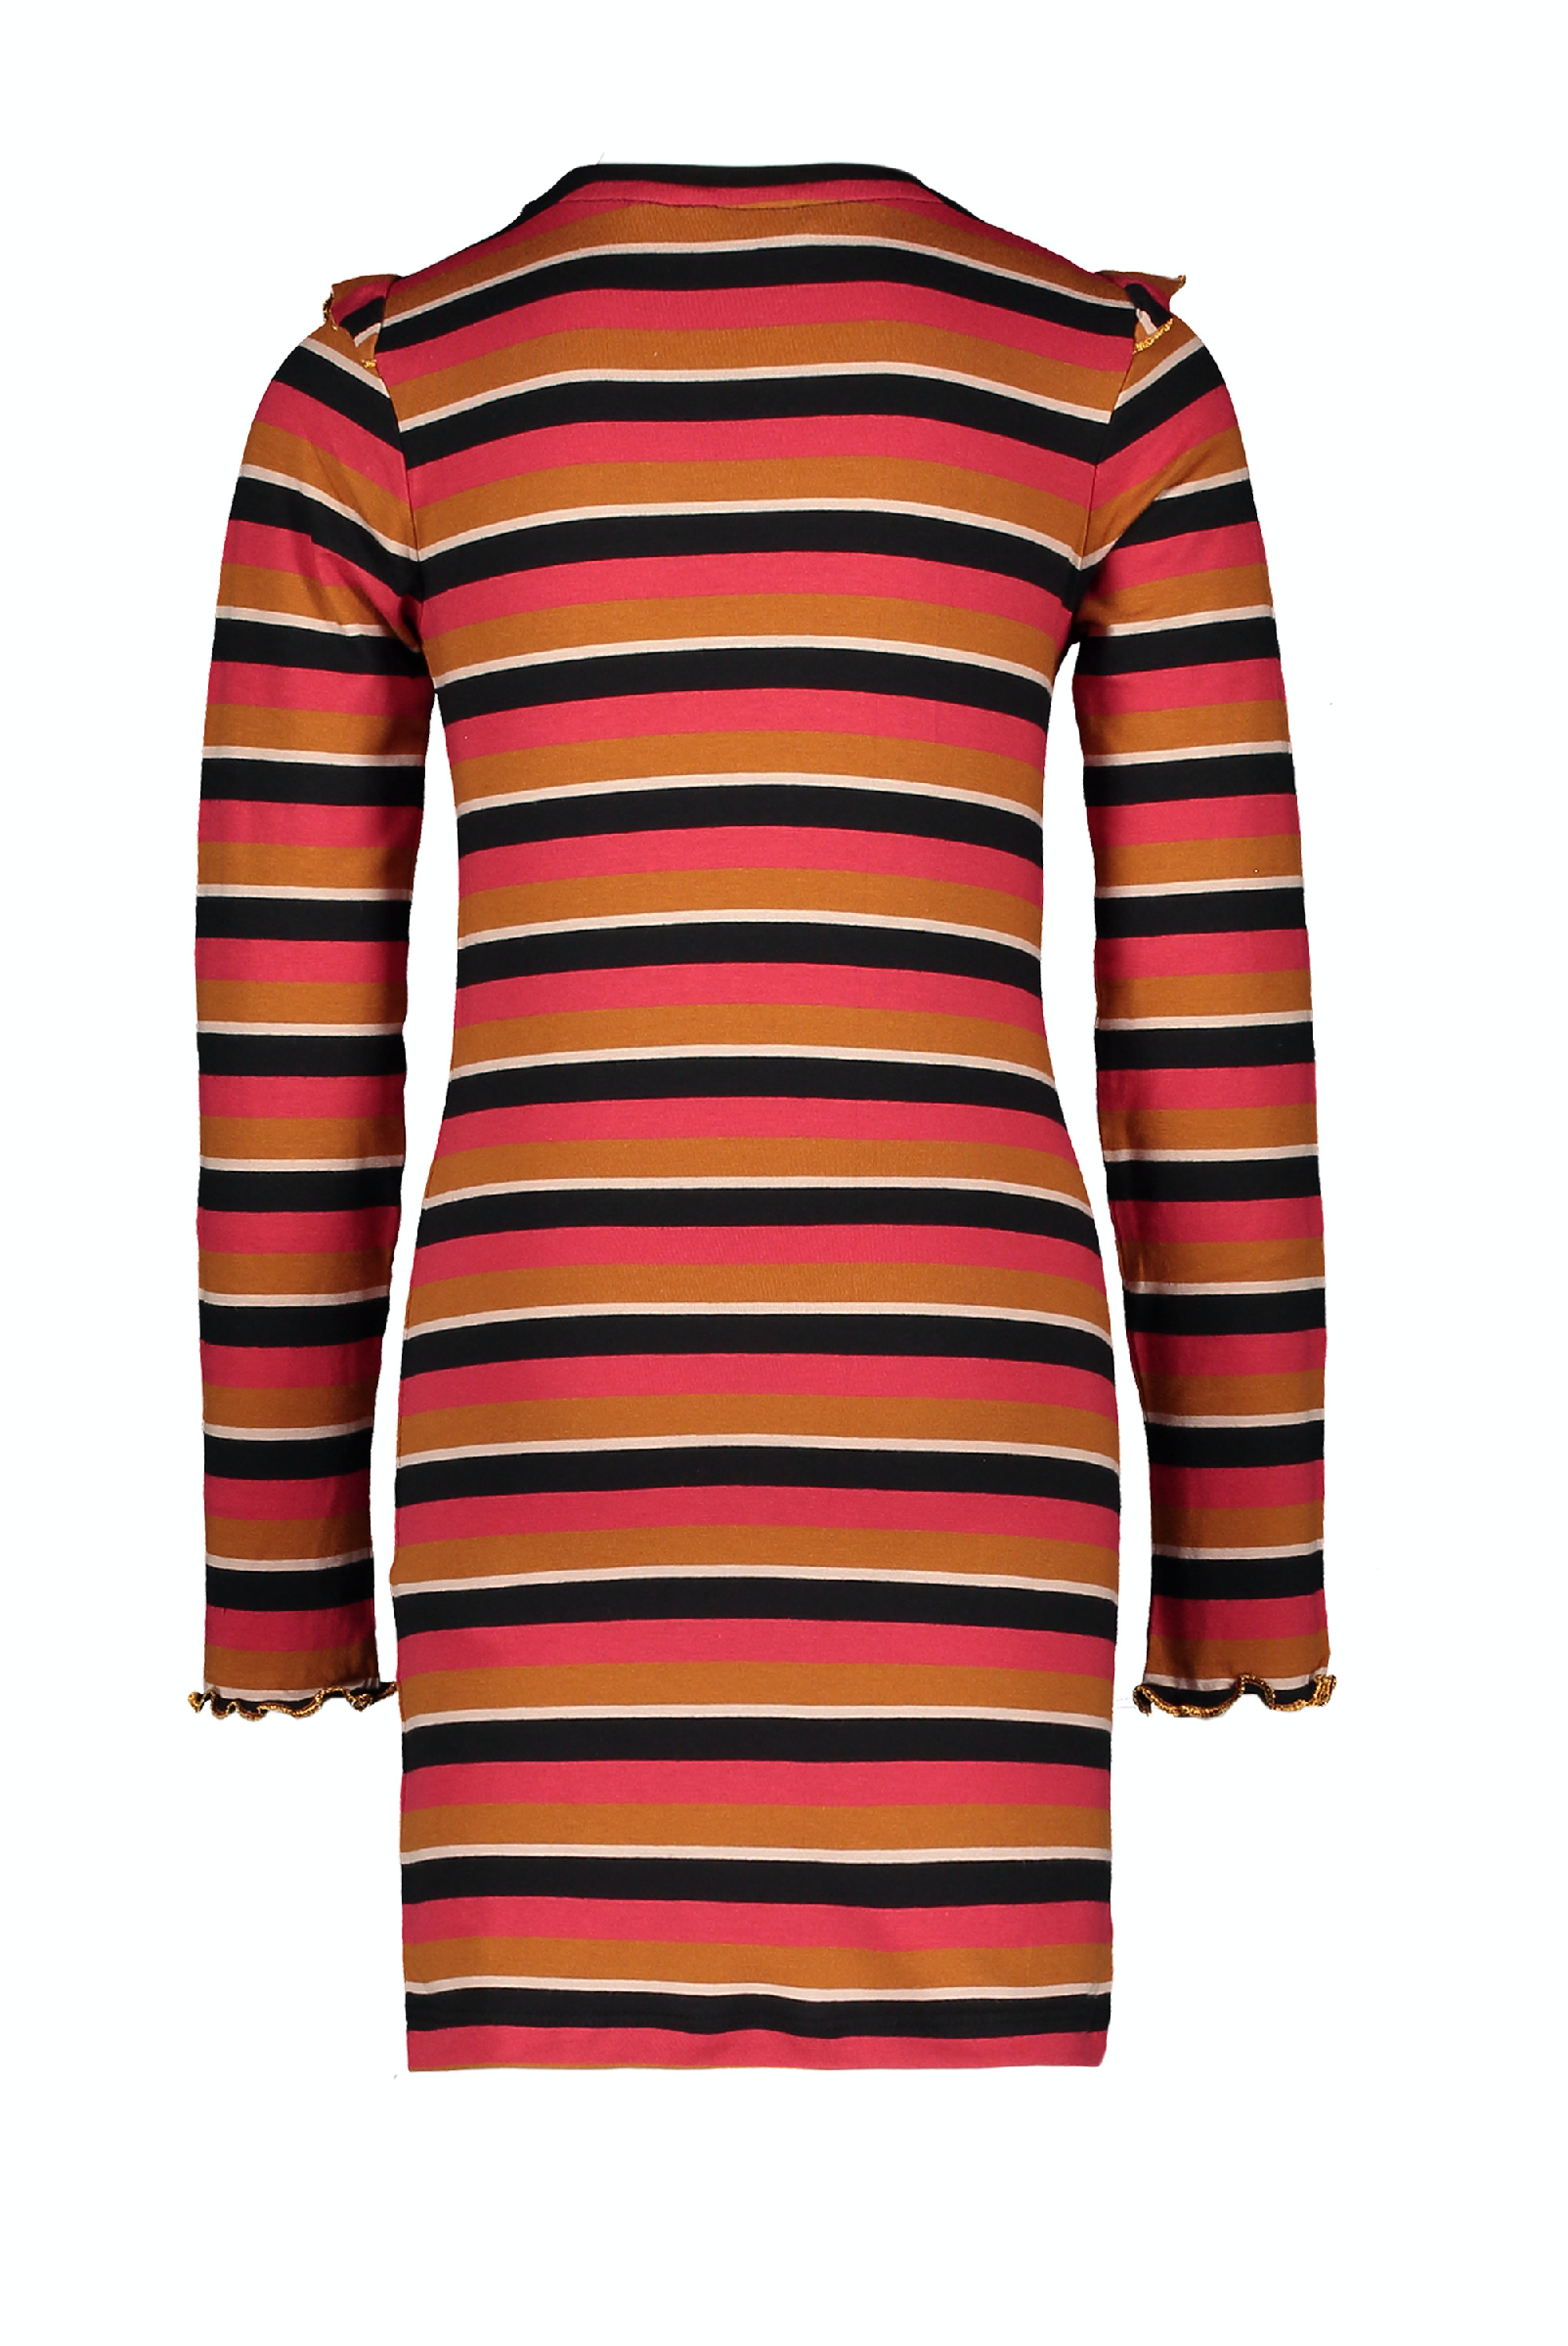 Moodstreet MT striped dress frills